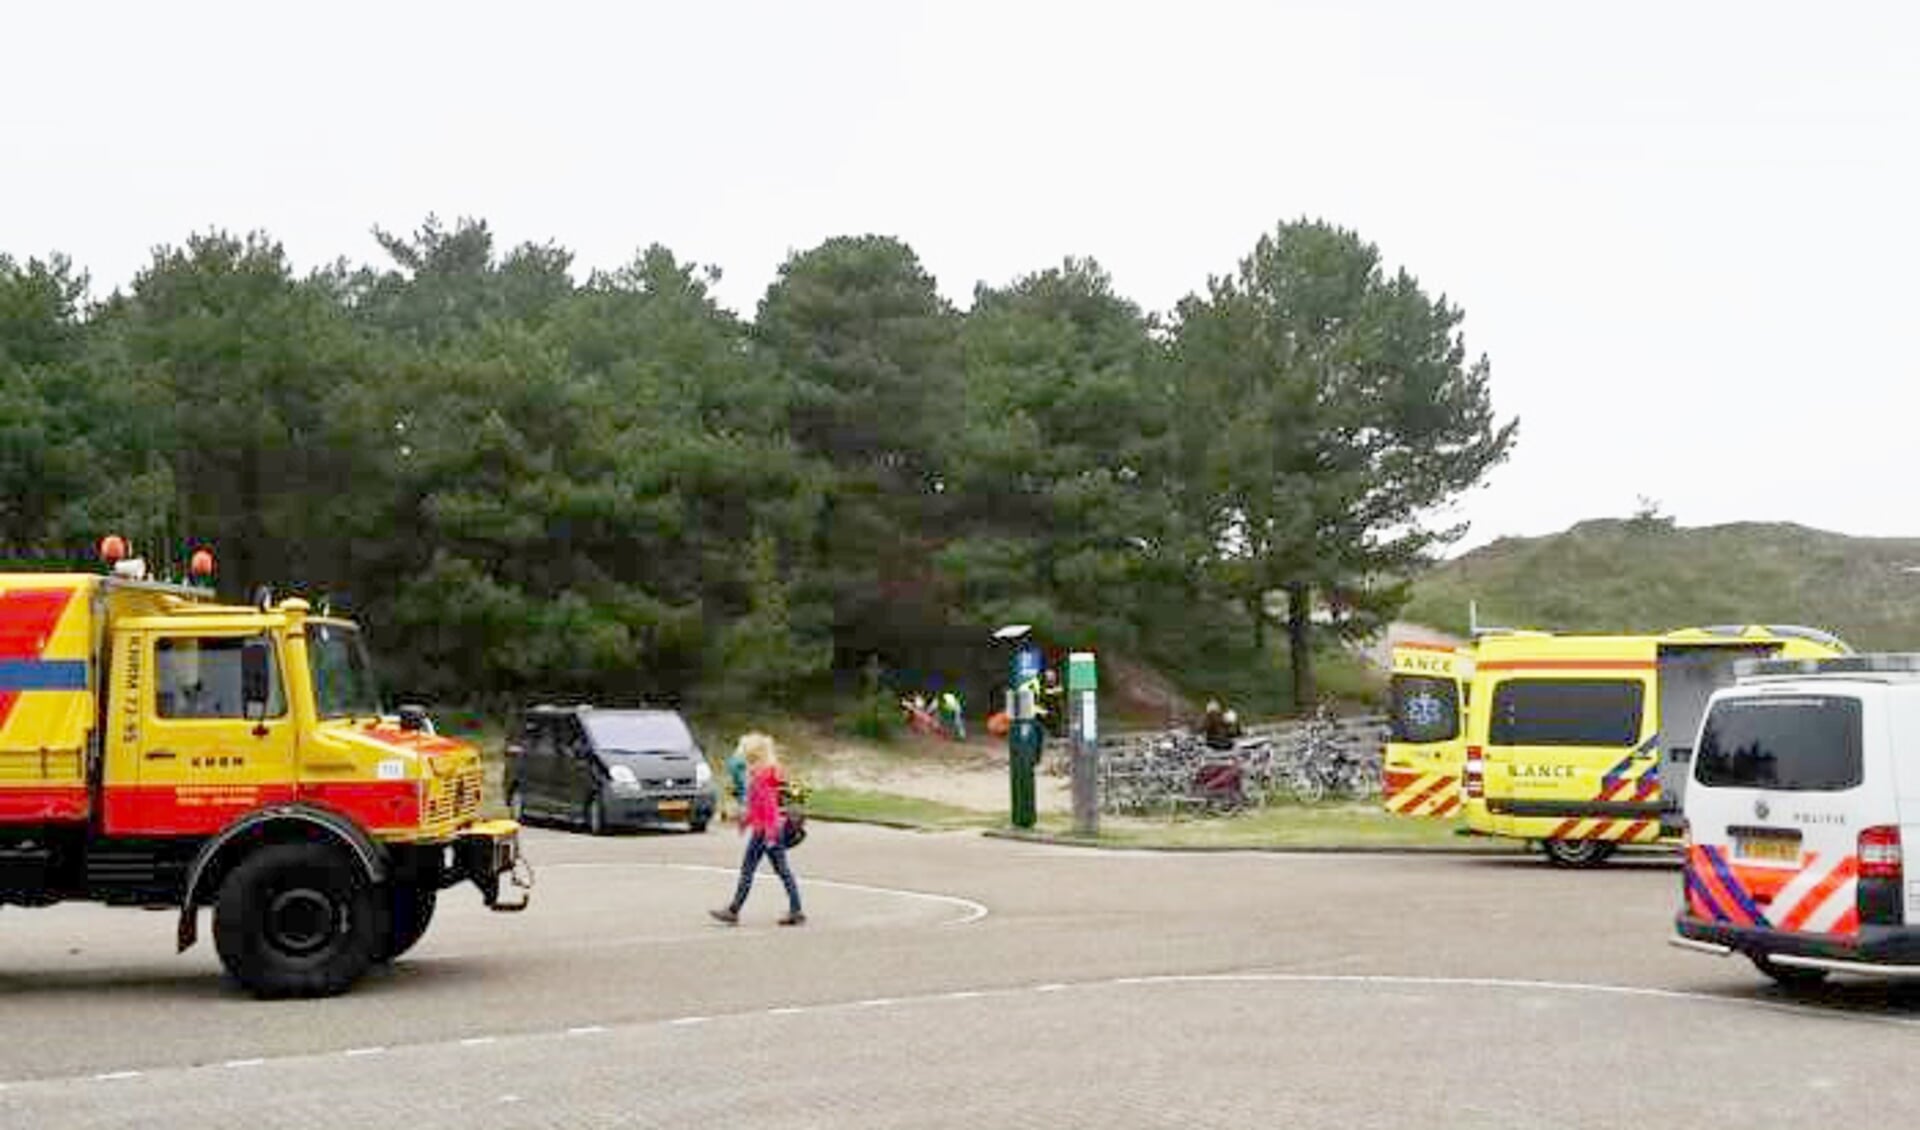 Whippertruck, politie en ambulance zijn ter plaatse op het parkeerterrein van Paal 21.